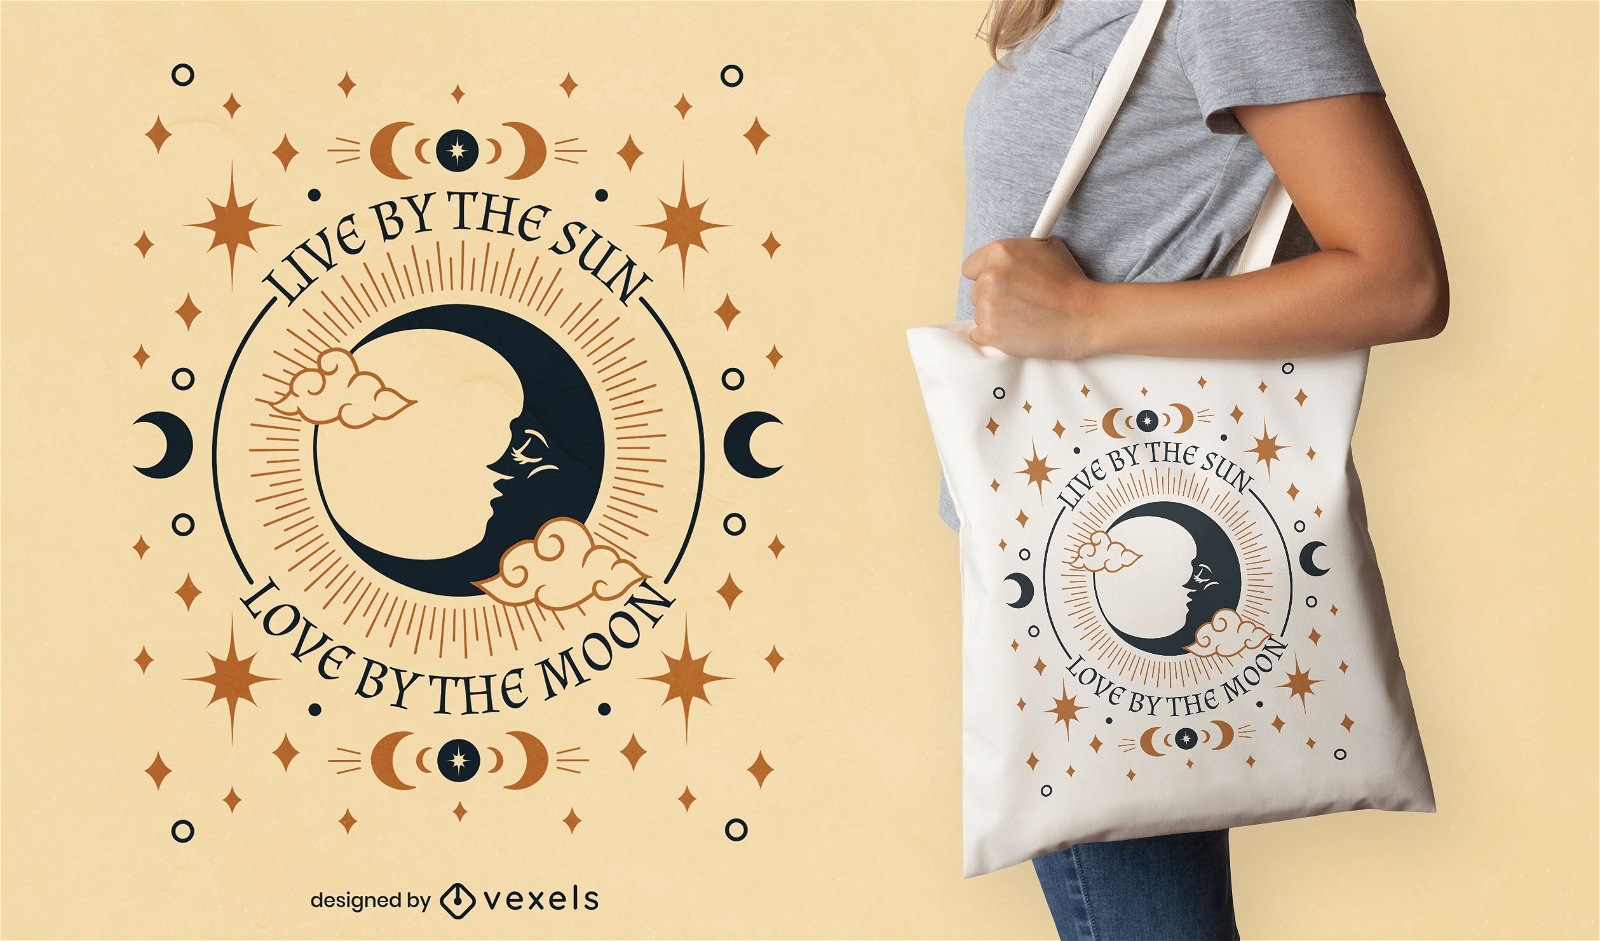 Design de bolsa com citação de lua mística